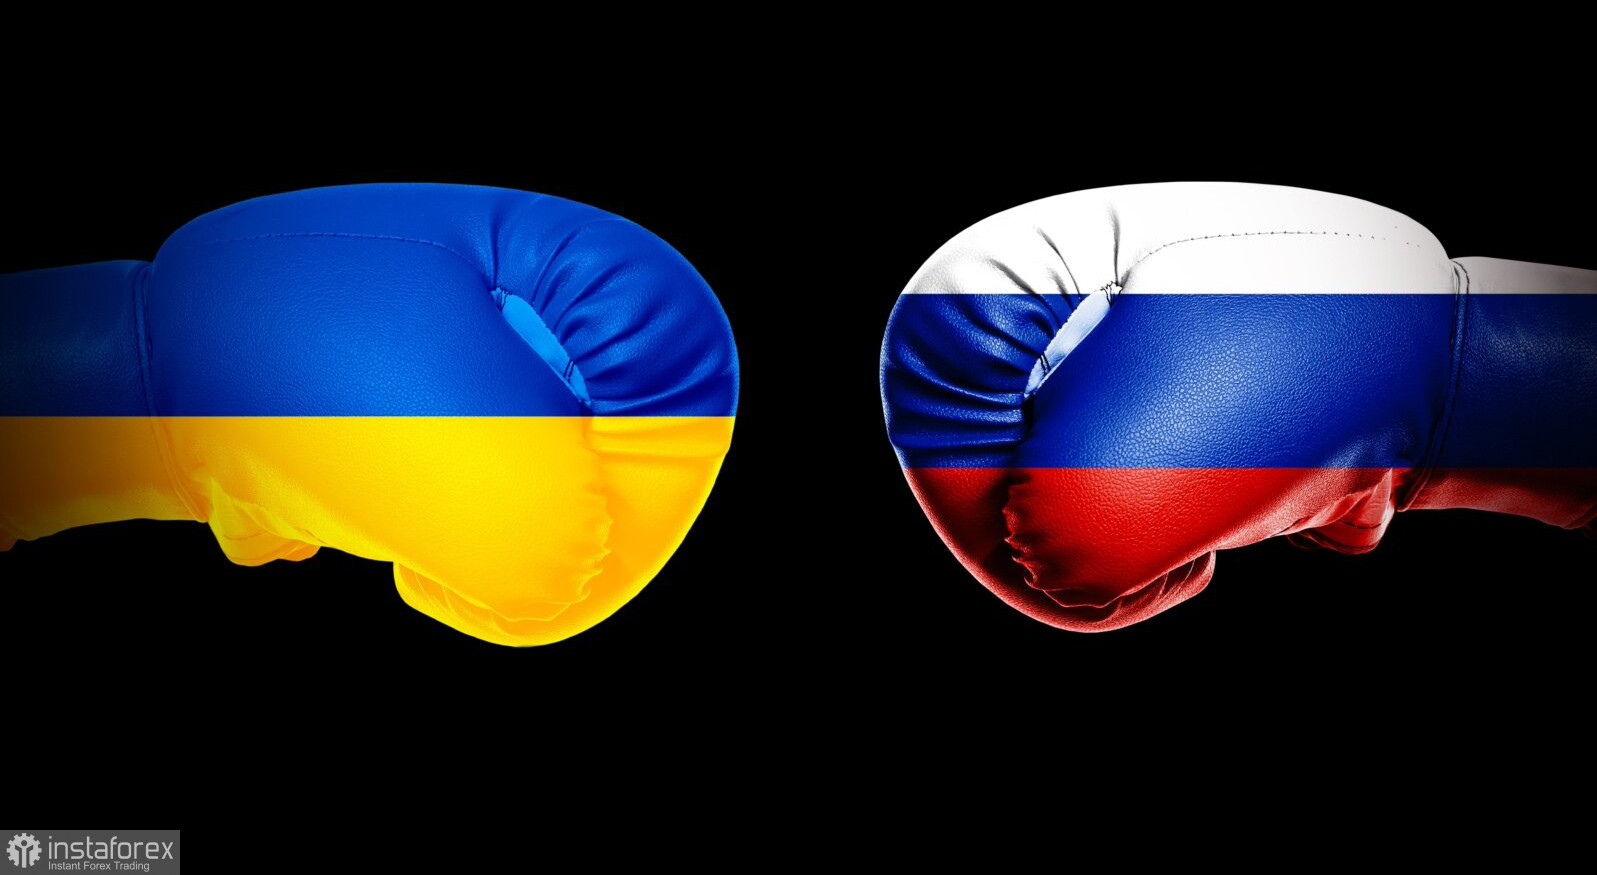 Украинско-российский конфликт, день 56-й. Запад продолжает поставлять вооружение в Украину